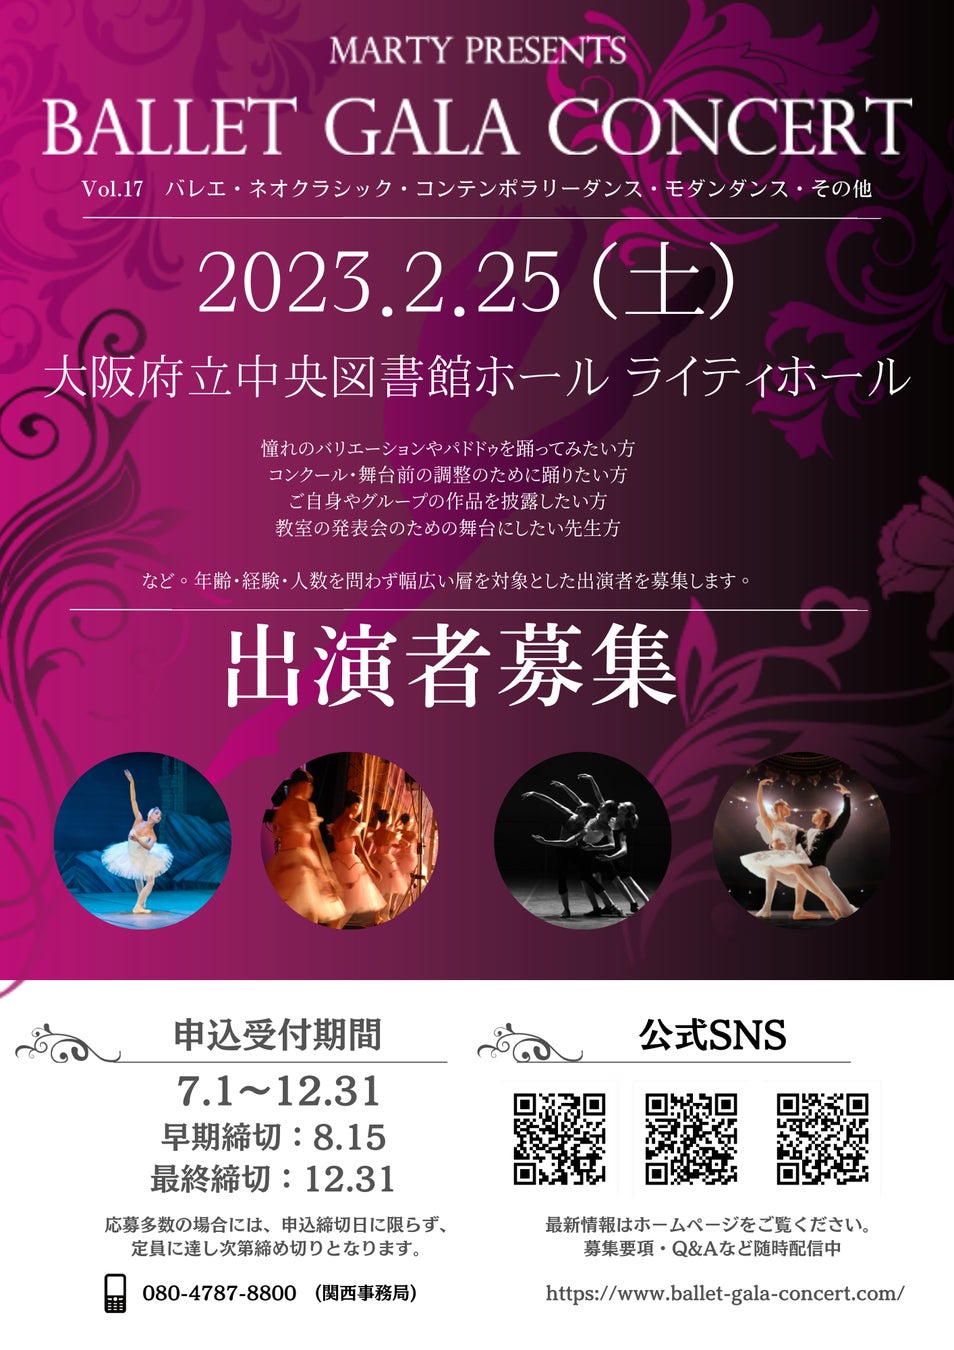 【募集開始】みんなのバレエガラコンサートin大阪 出演申込開始！2023年2月25日(土)大阪府立中央図書館ホール/ライティホールにて開催